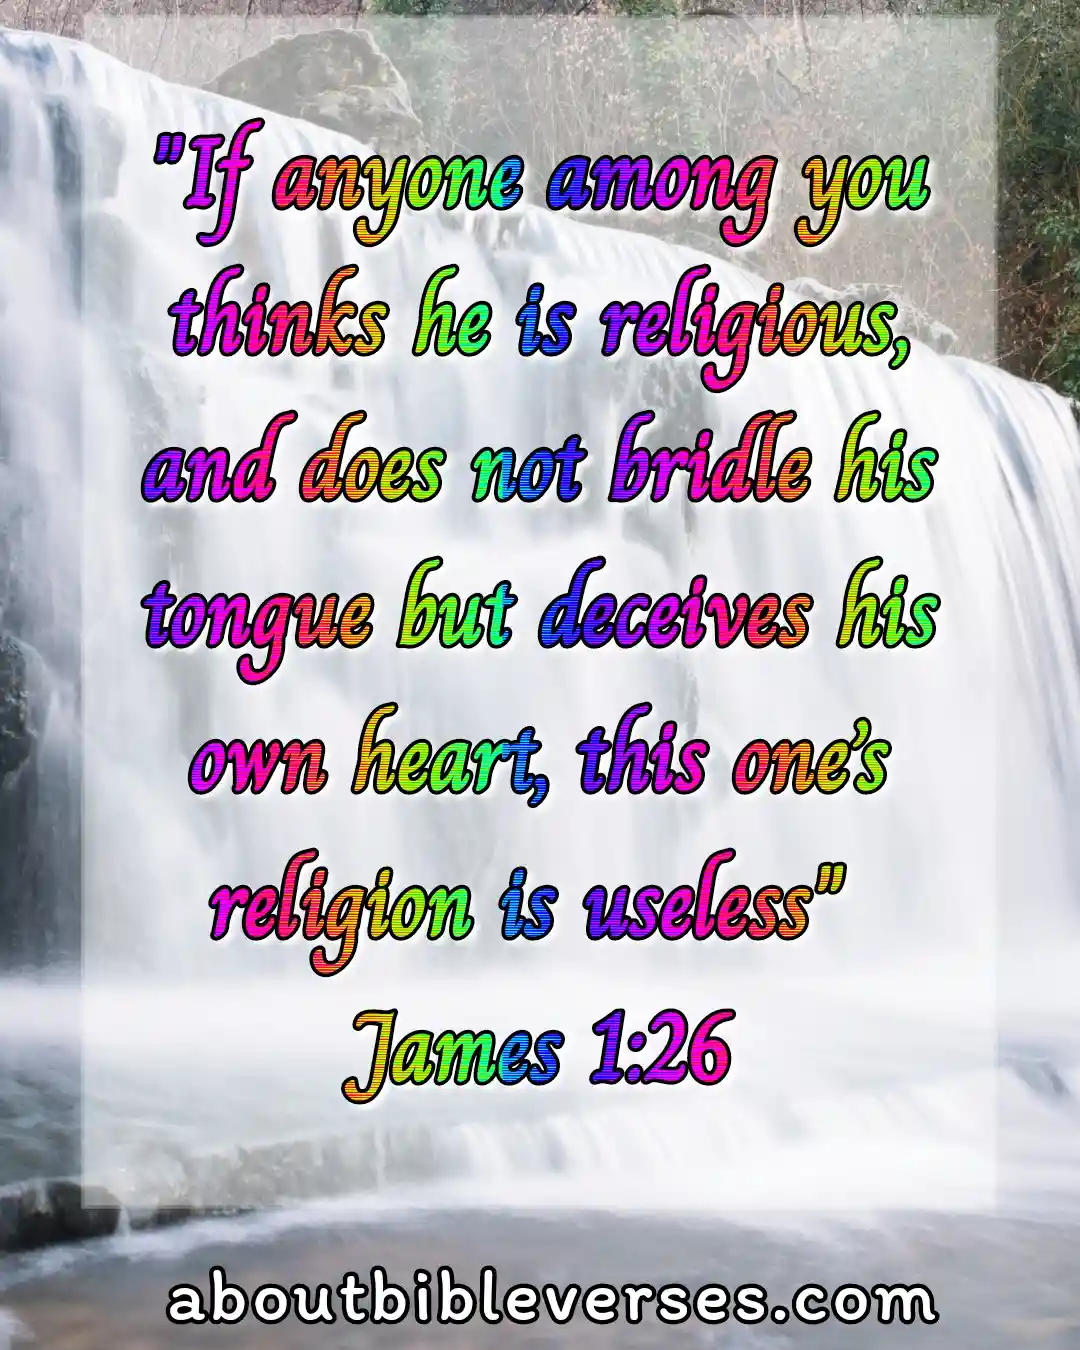 bible verses lying and deceit (James 1:26)